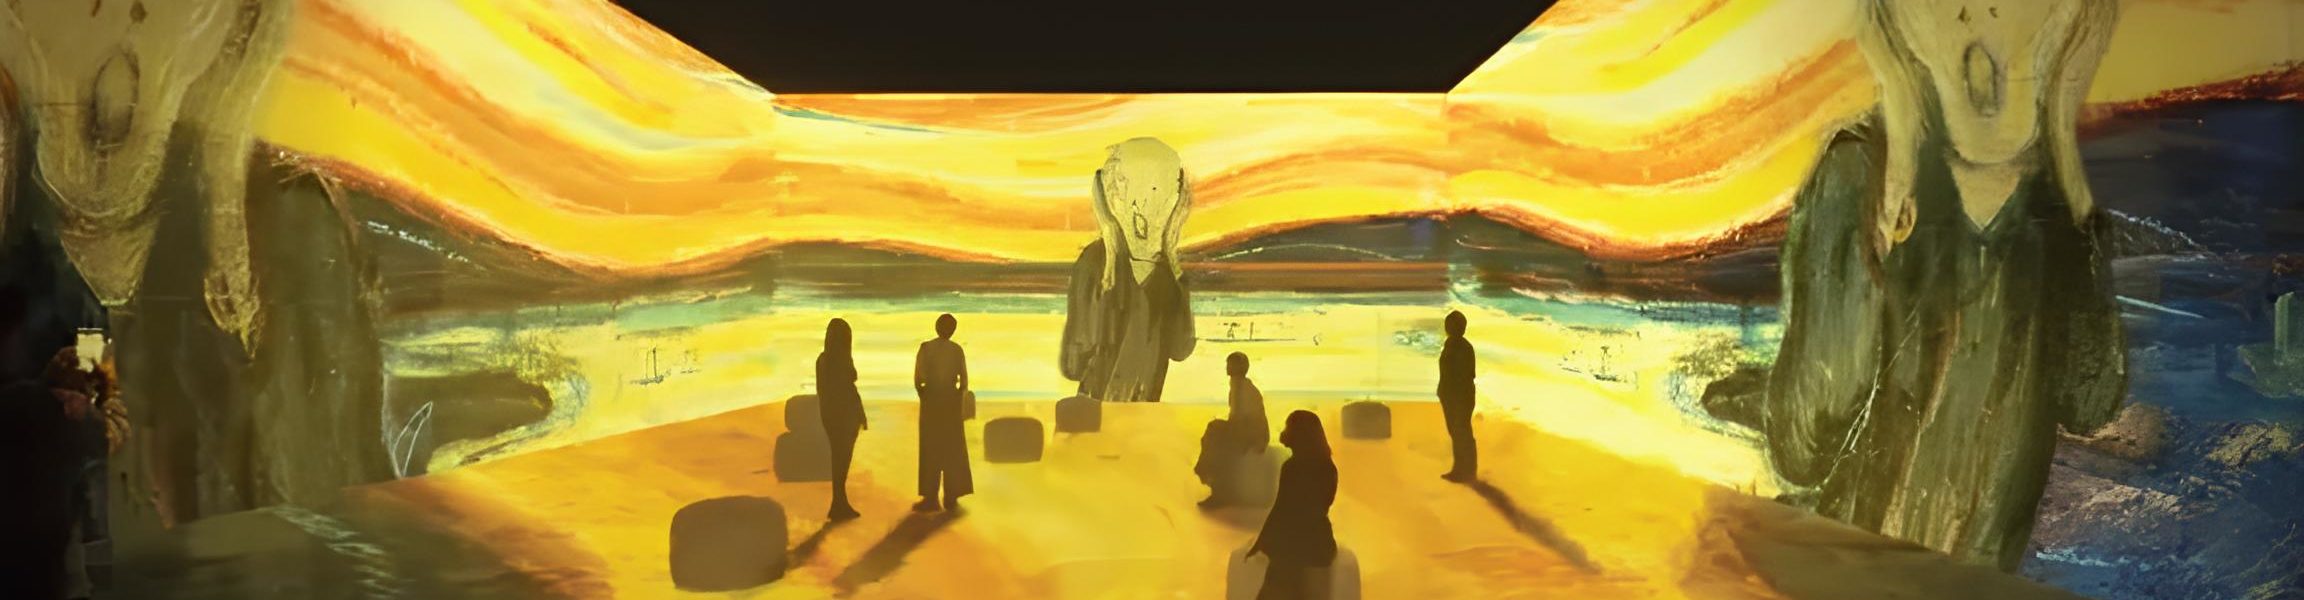 La spettacolare mostra sul pittore Edvard Munch